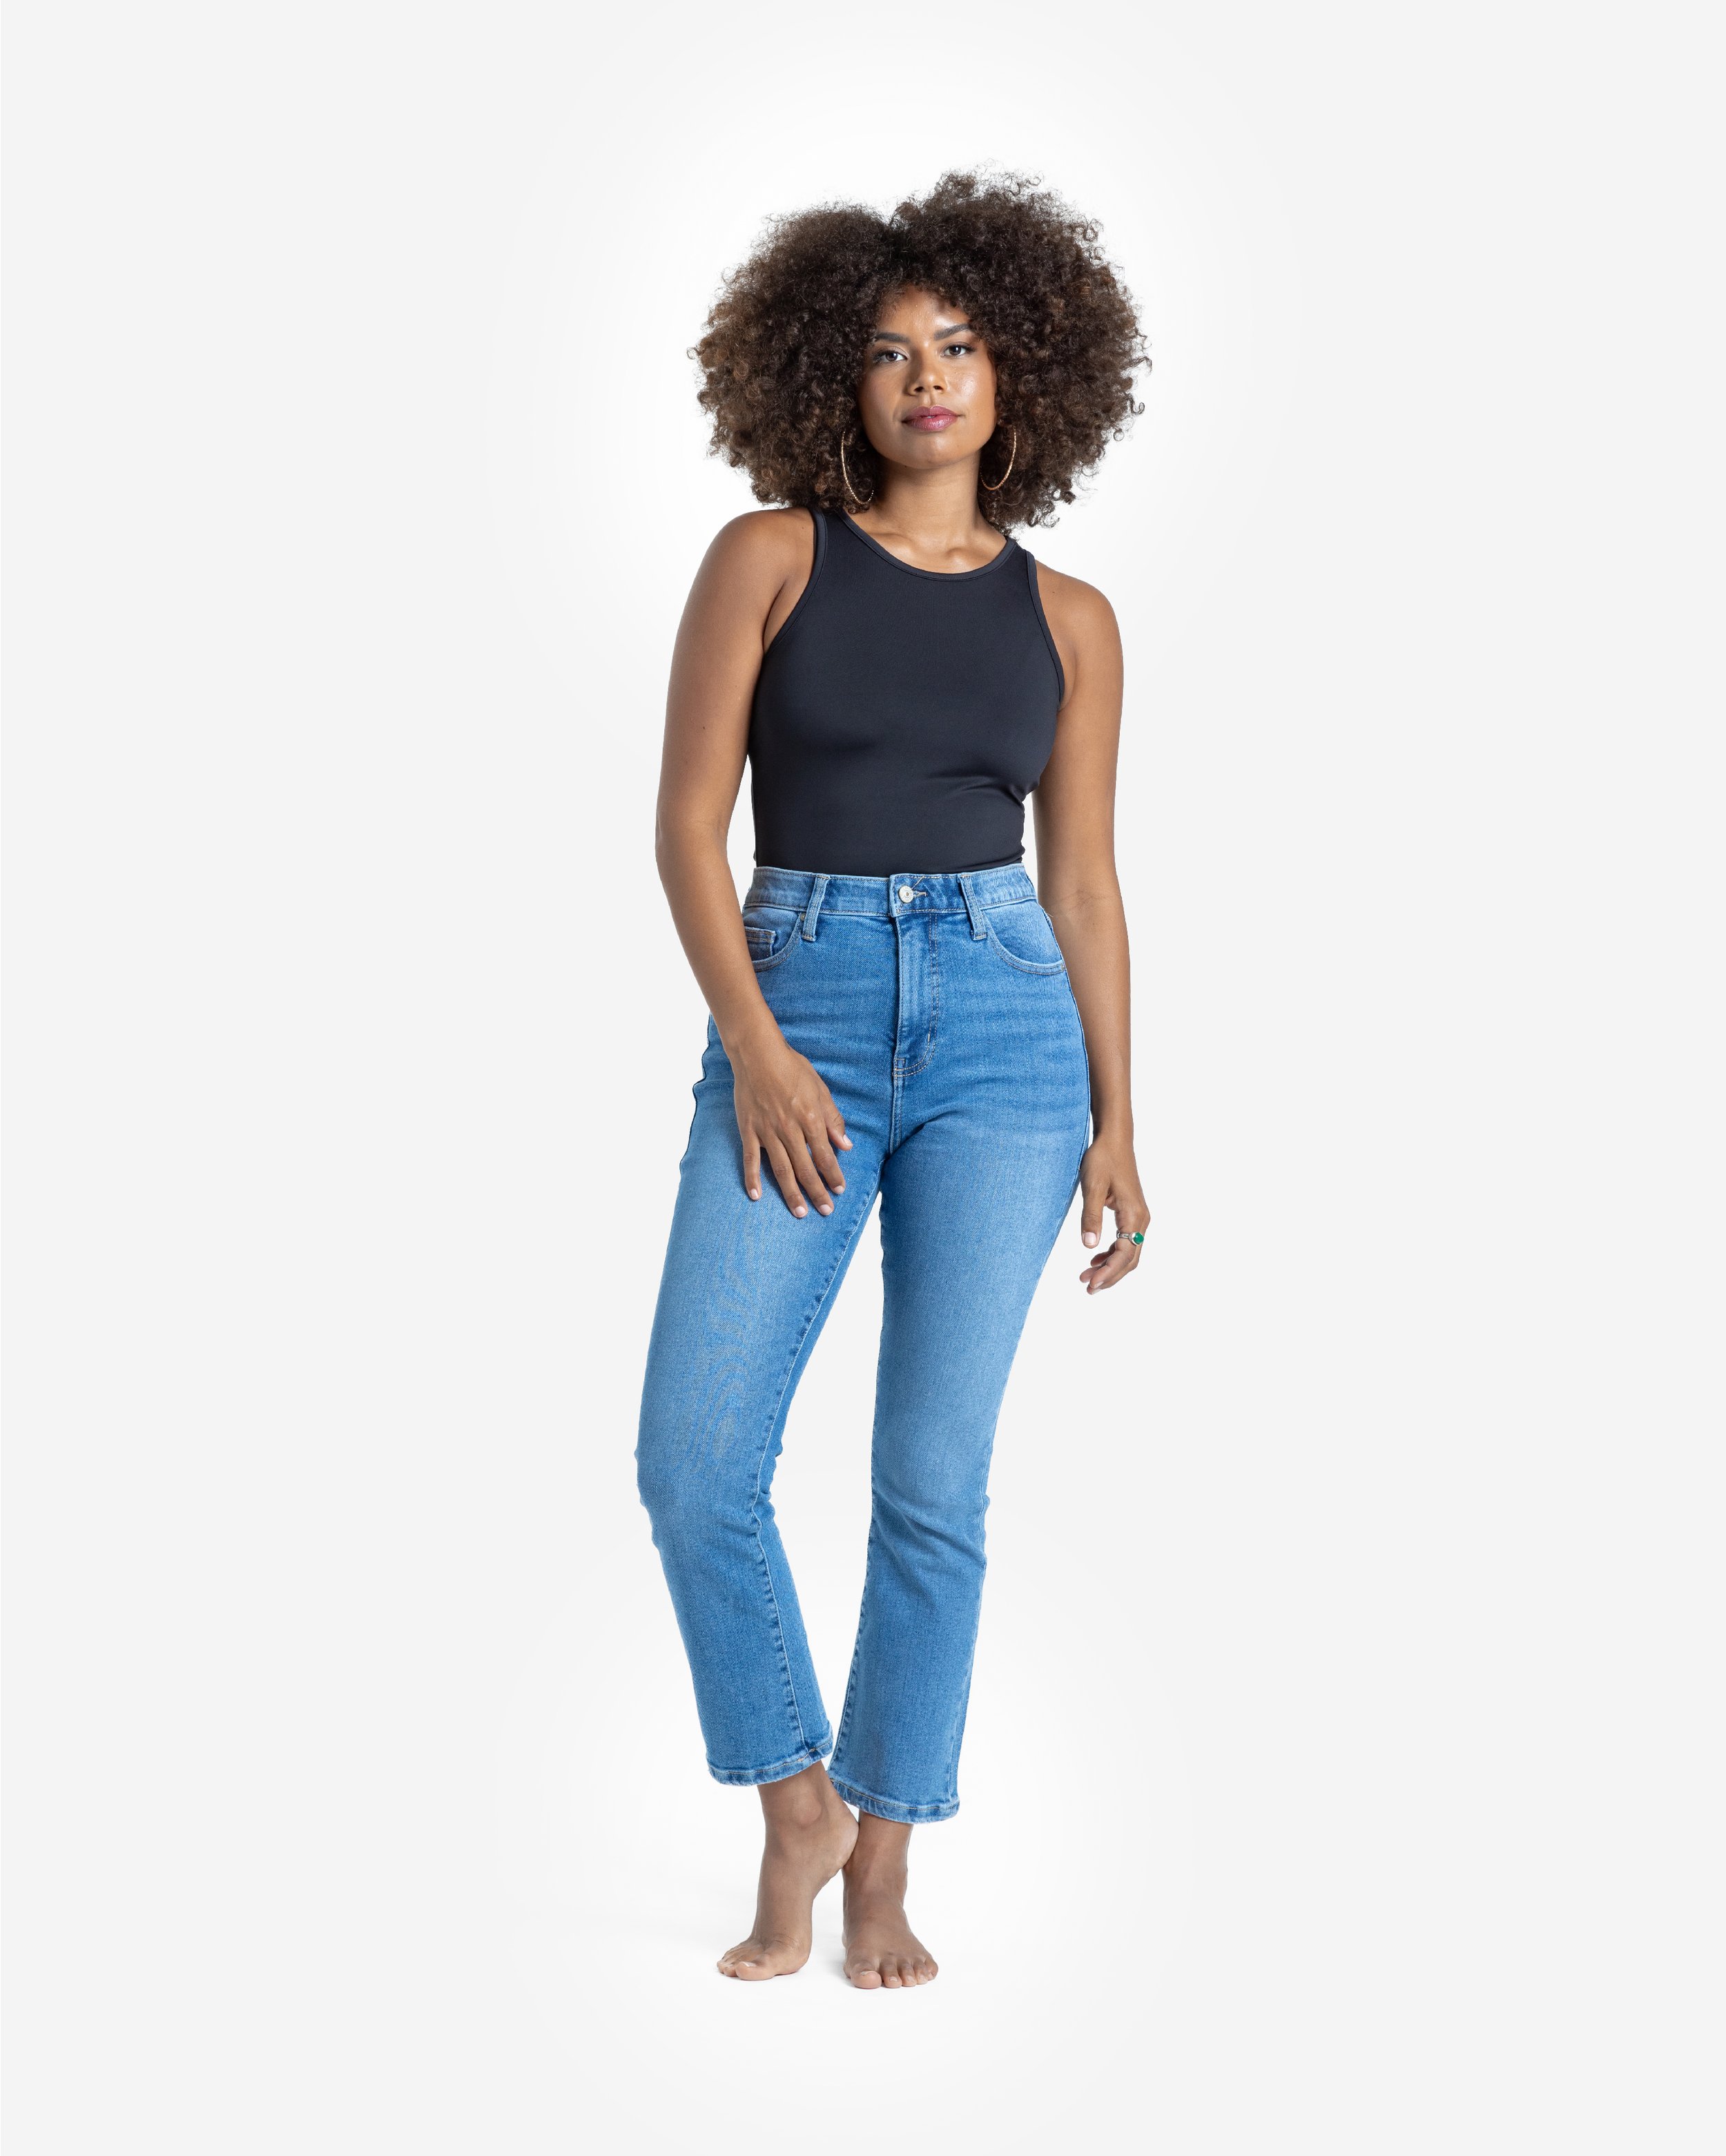 21 Best HighWaisted Jeans for Women 2023  Best High Rise Denim